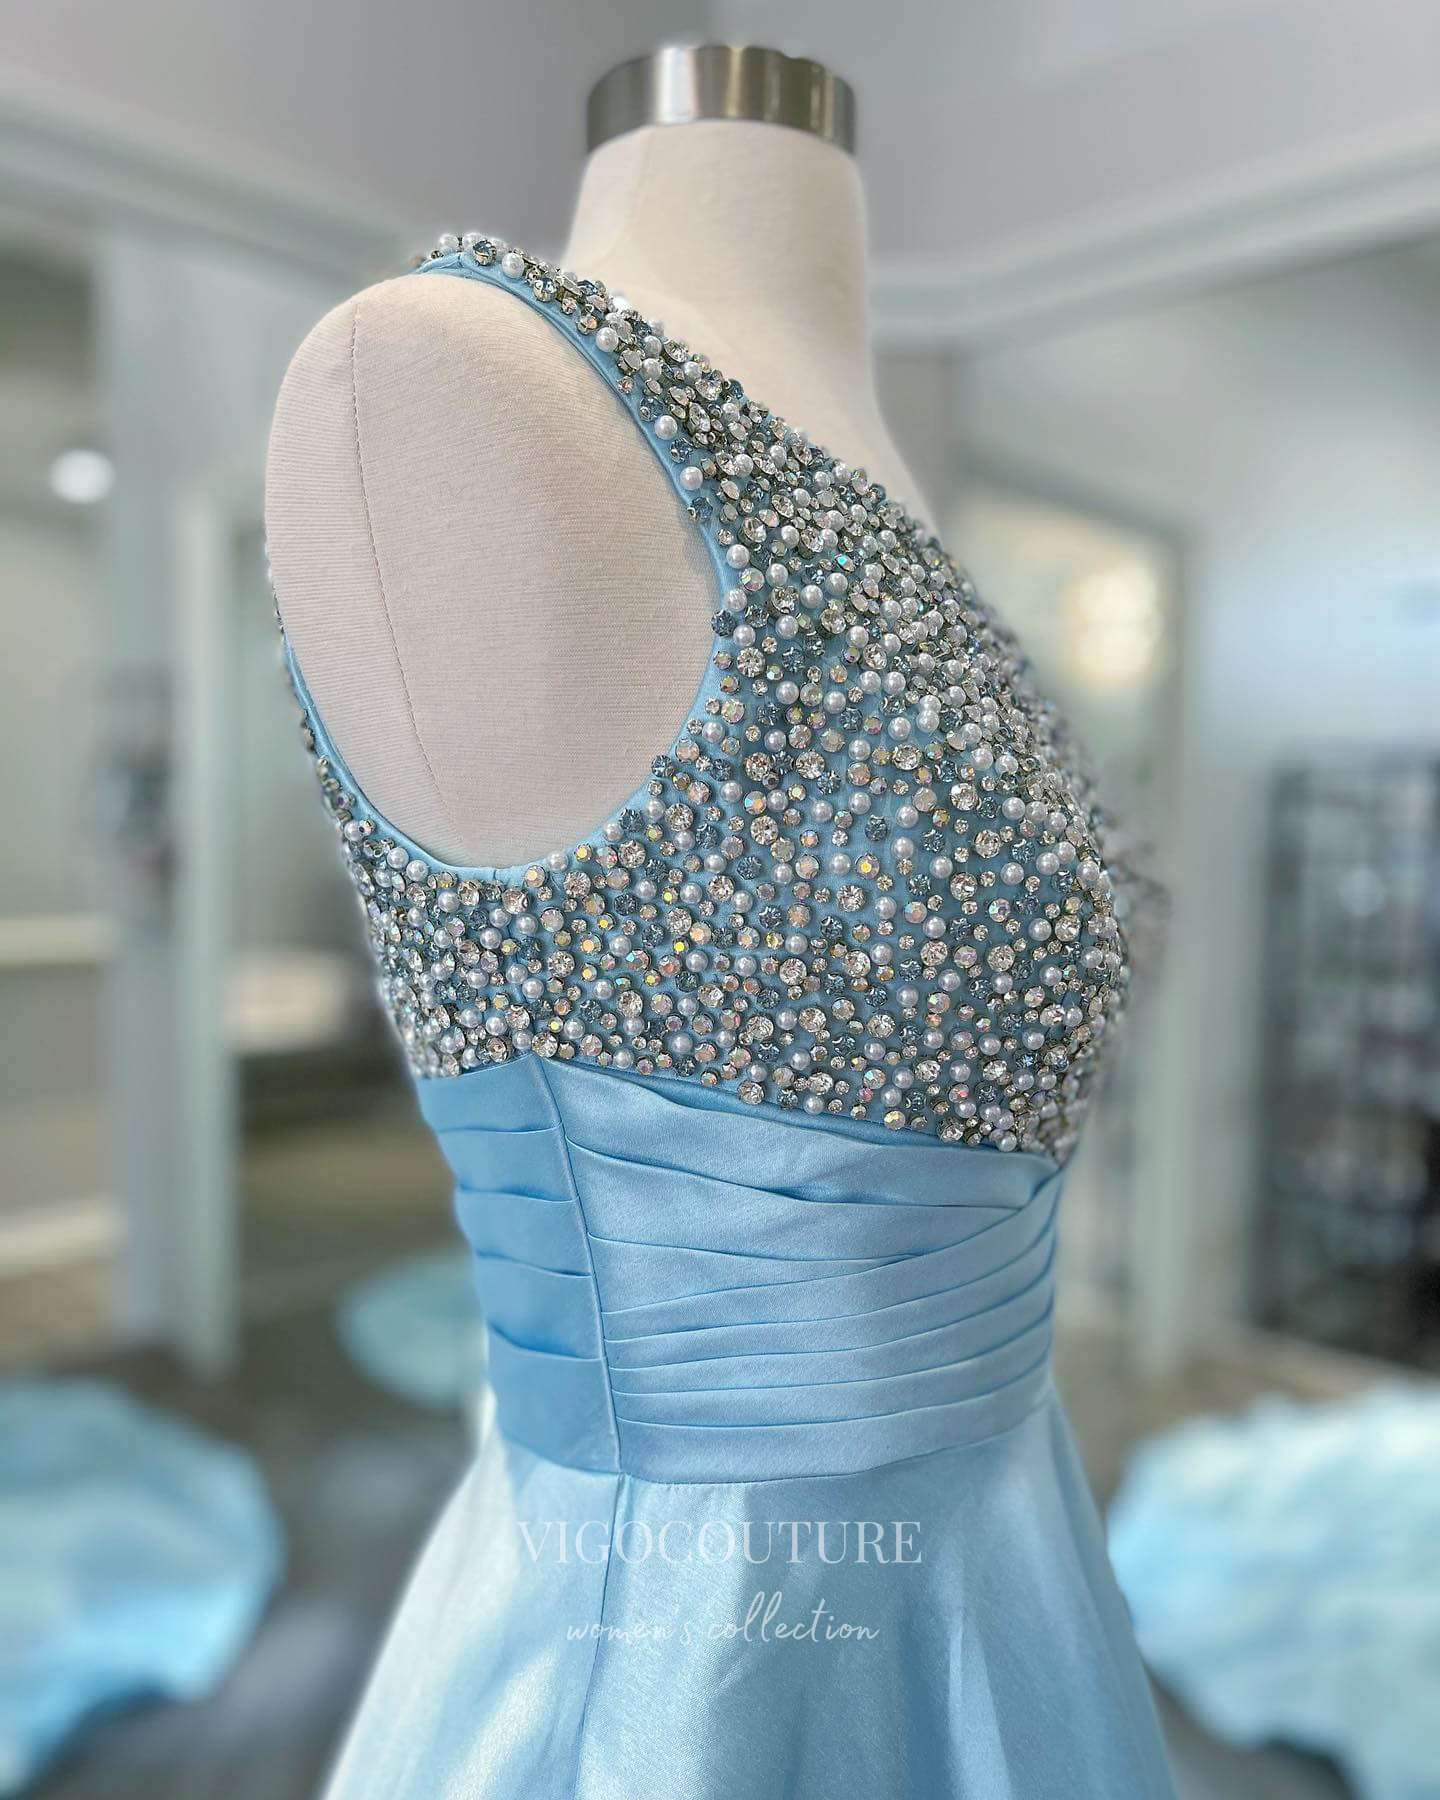 vigocouture-Light Blue One Shoulder Prom Dresses Beaded Satin Evening Dress 21696-Prom Dresses-vigocouture-